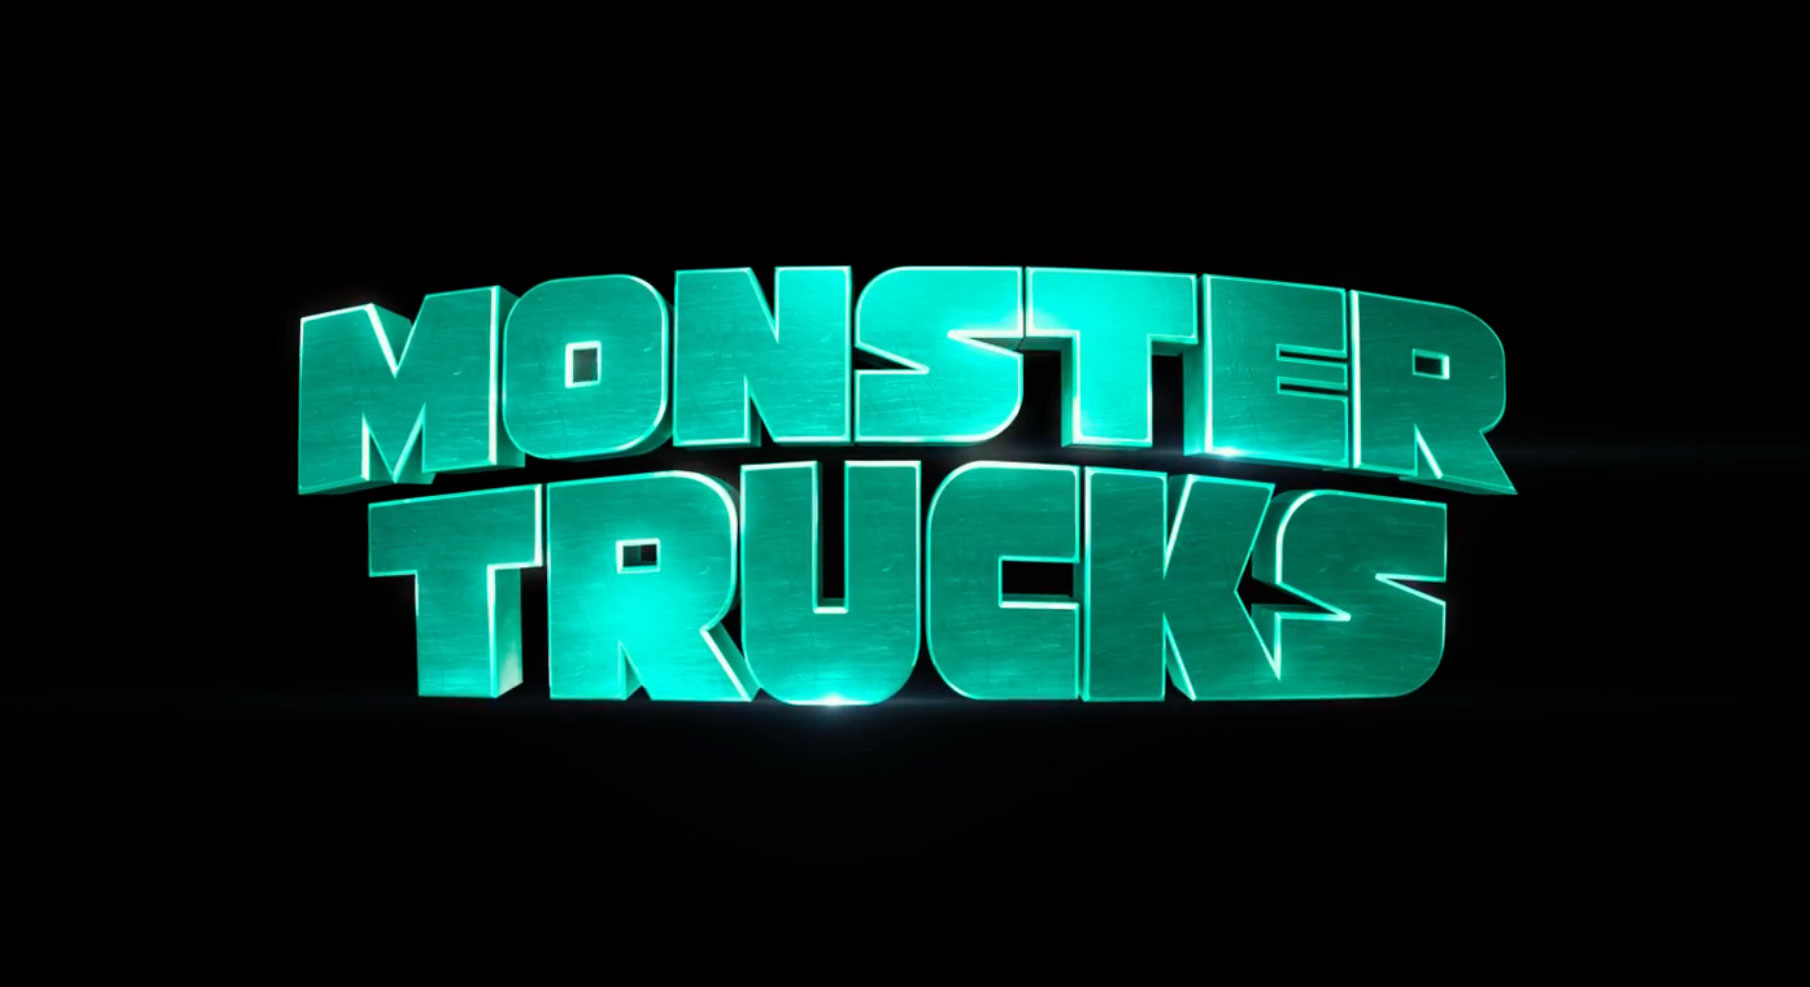 Monster Trucks Movie Review